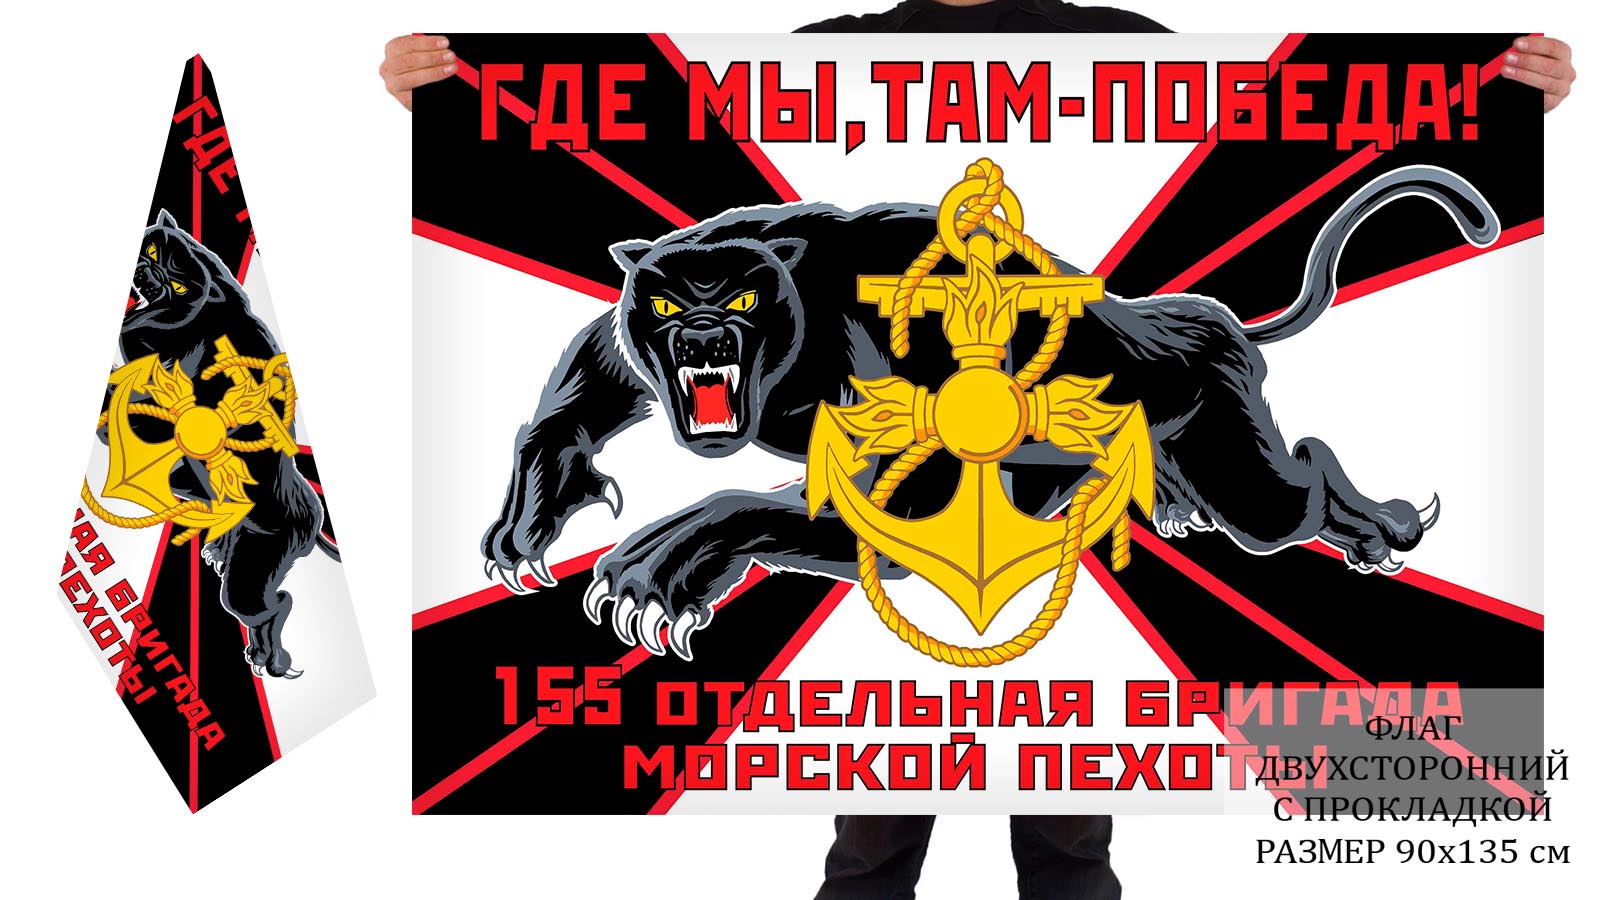 Двусторонний флаг 155 отдельной бригады морпехоты с пантерой